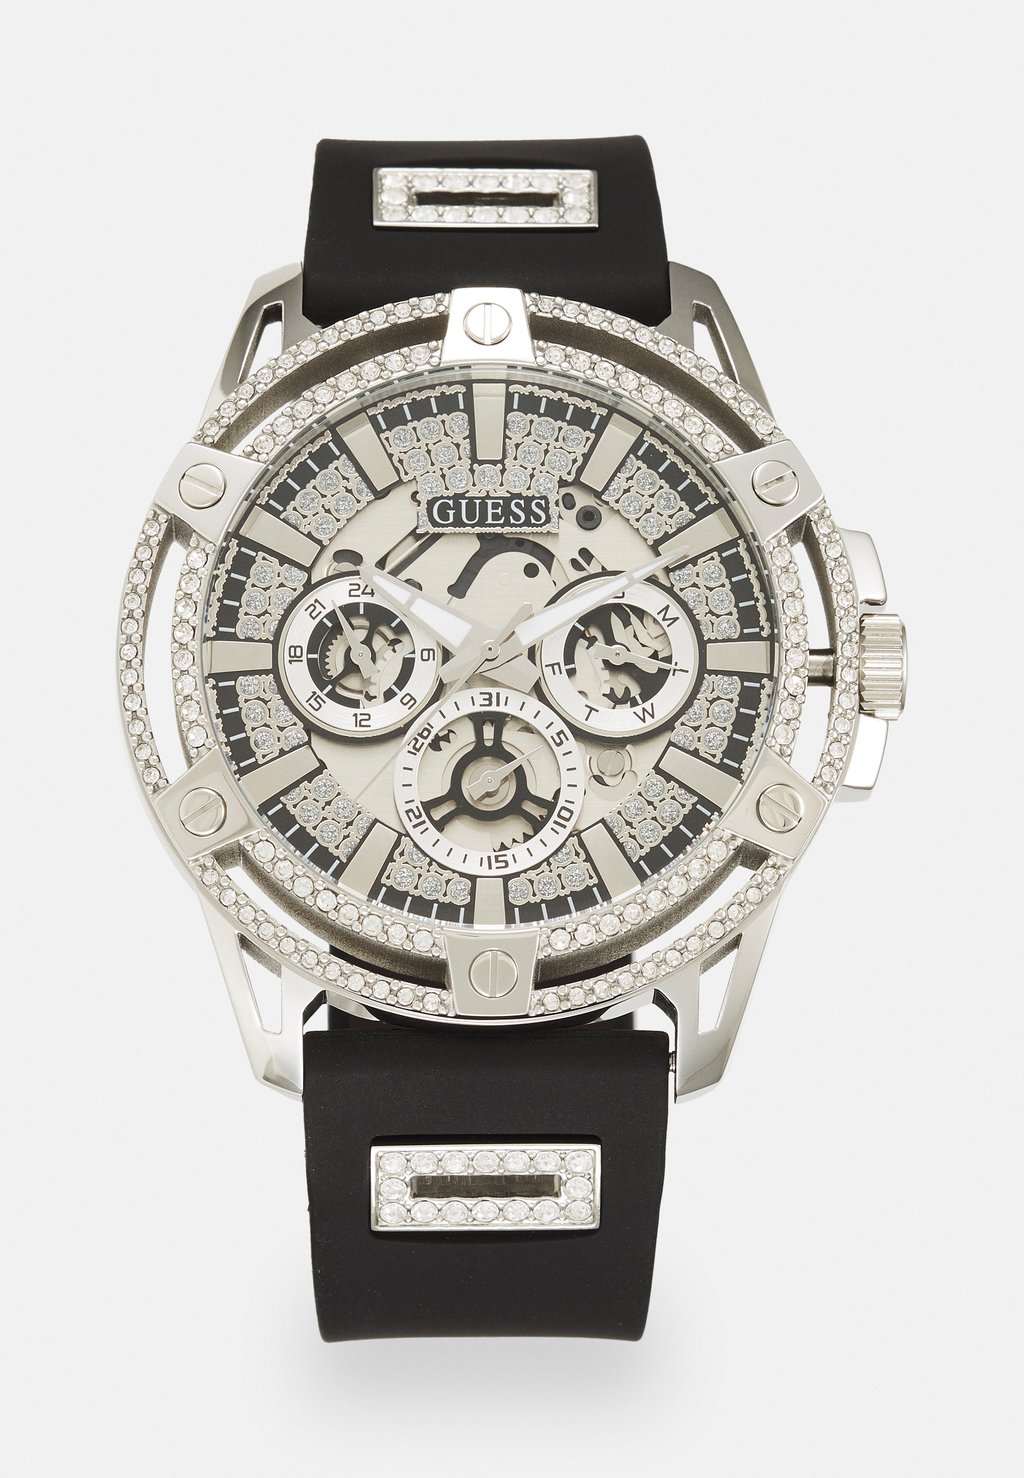 Часы King Guess, цвет silver-coloured часы prodigy exclusive guess цвет silver coloured black